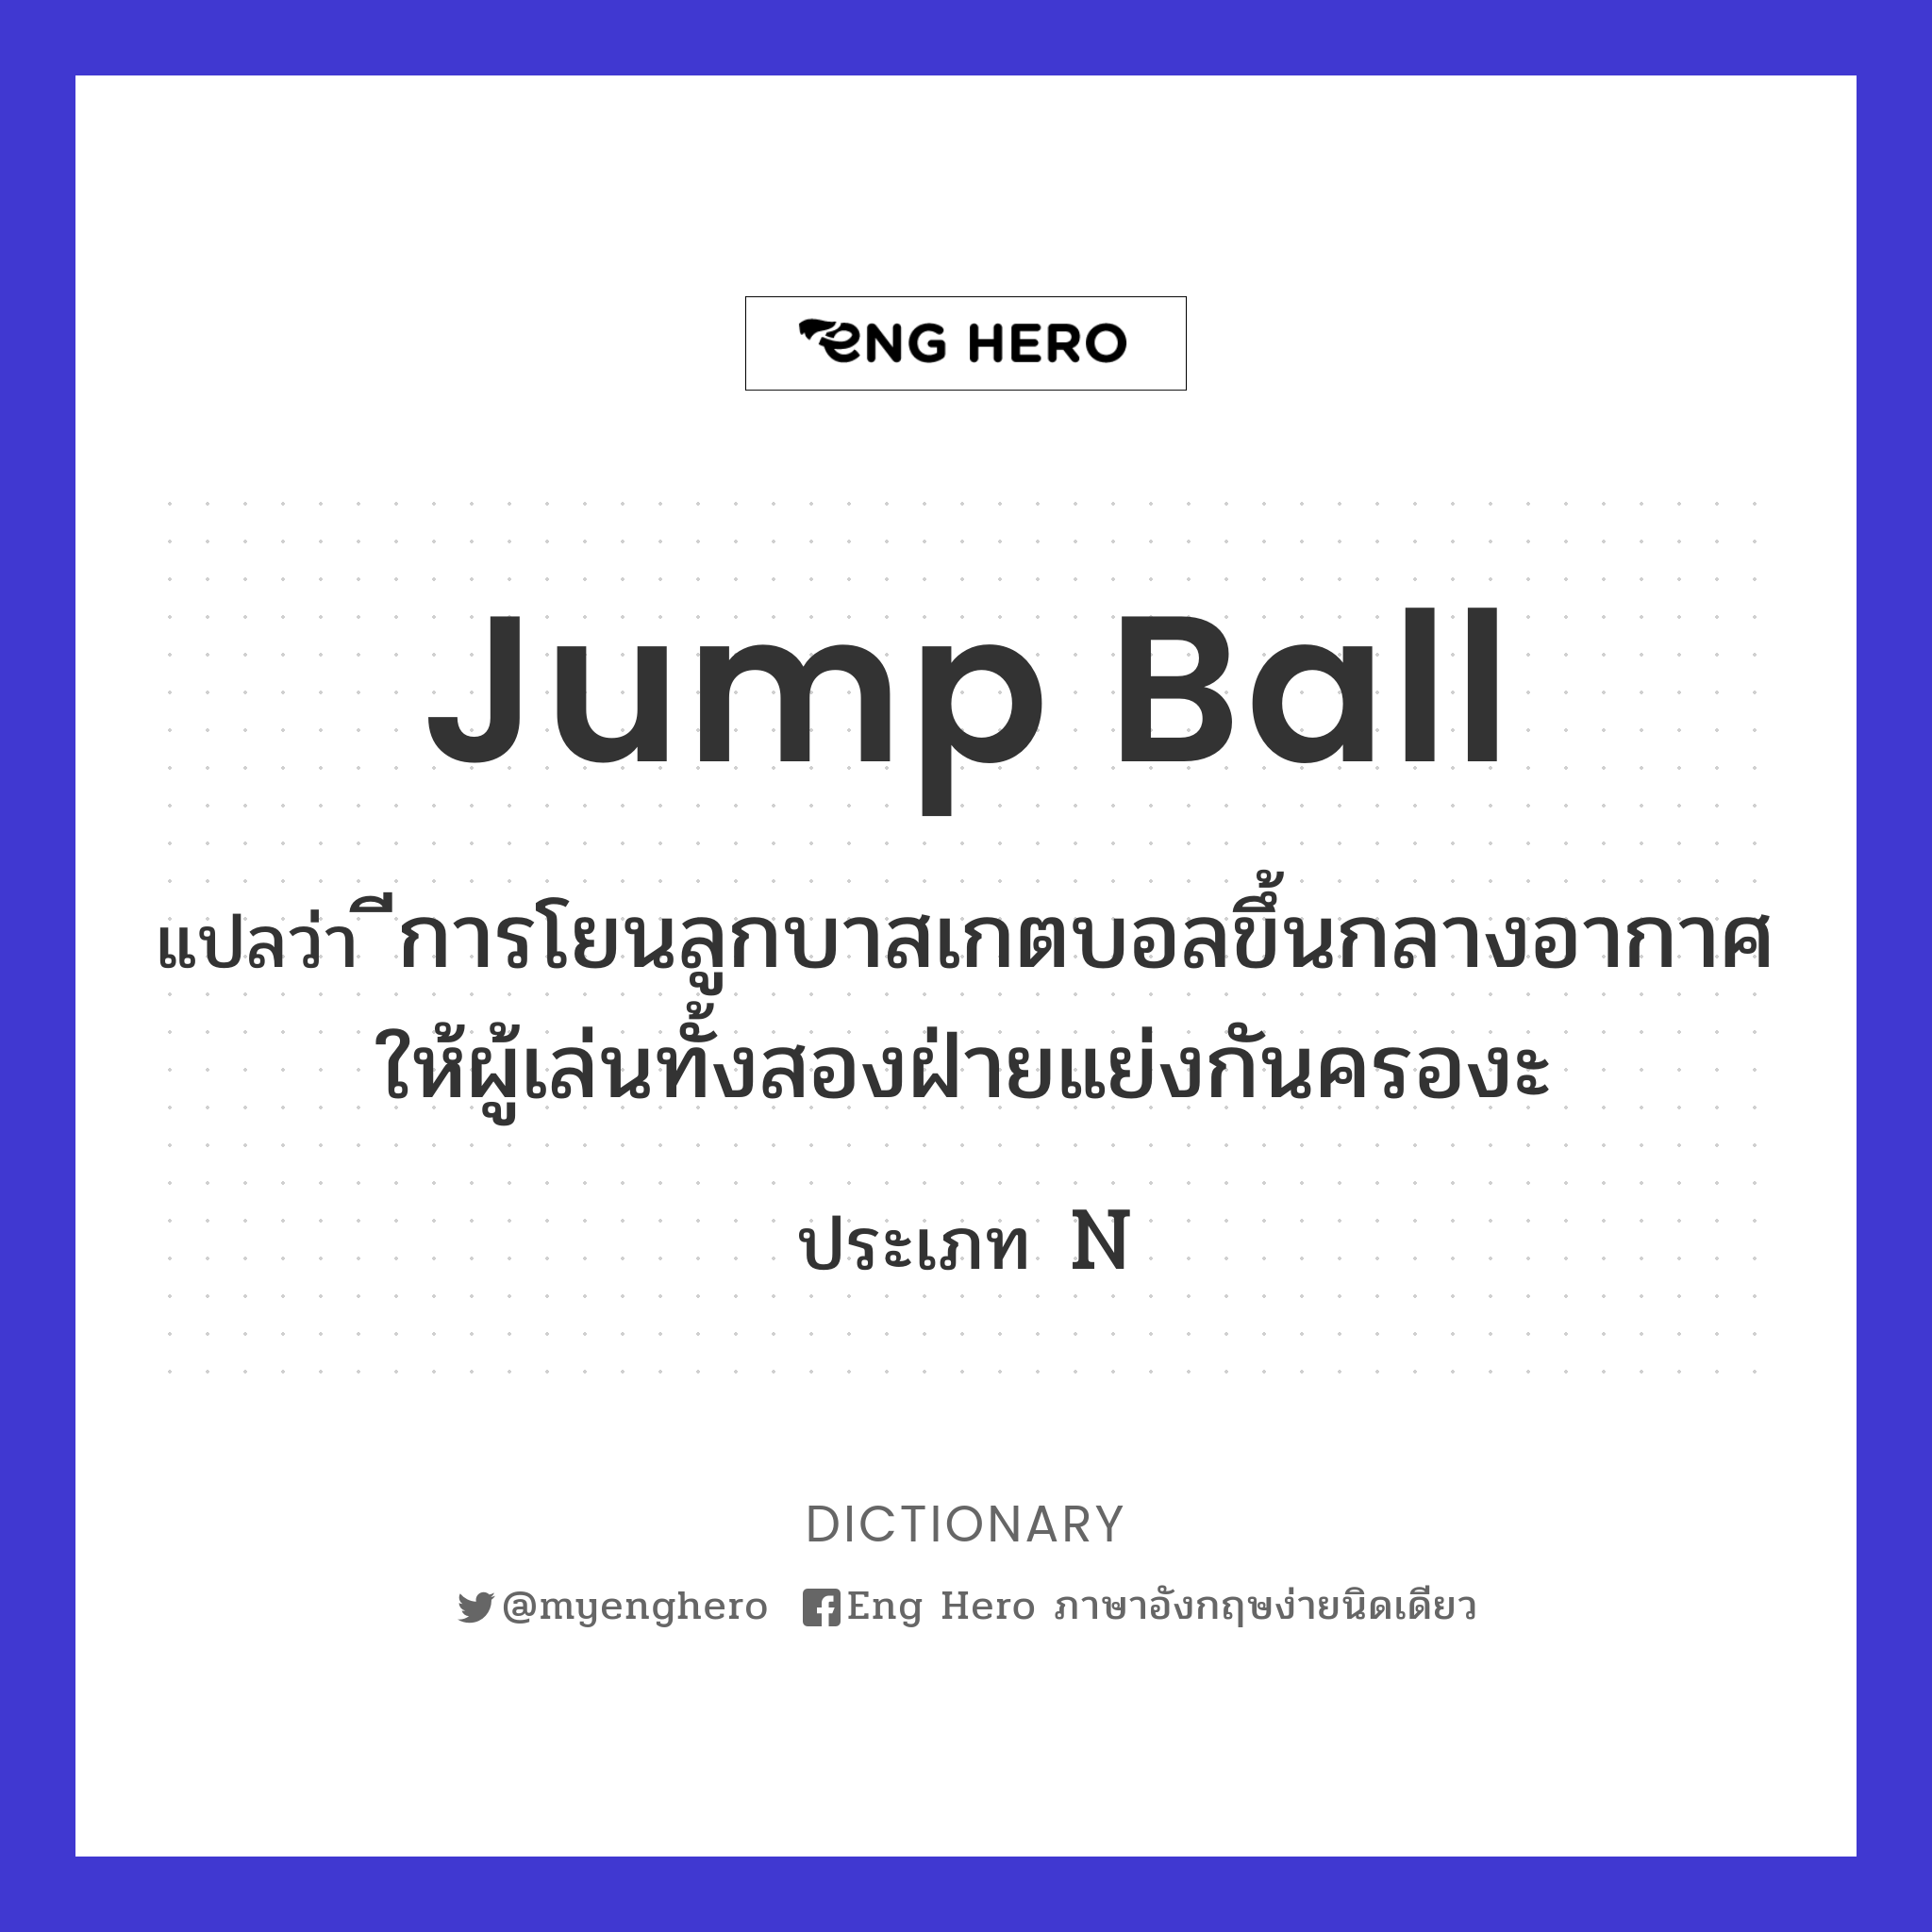 jump ball